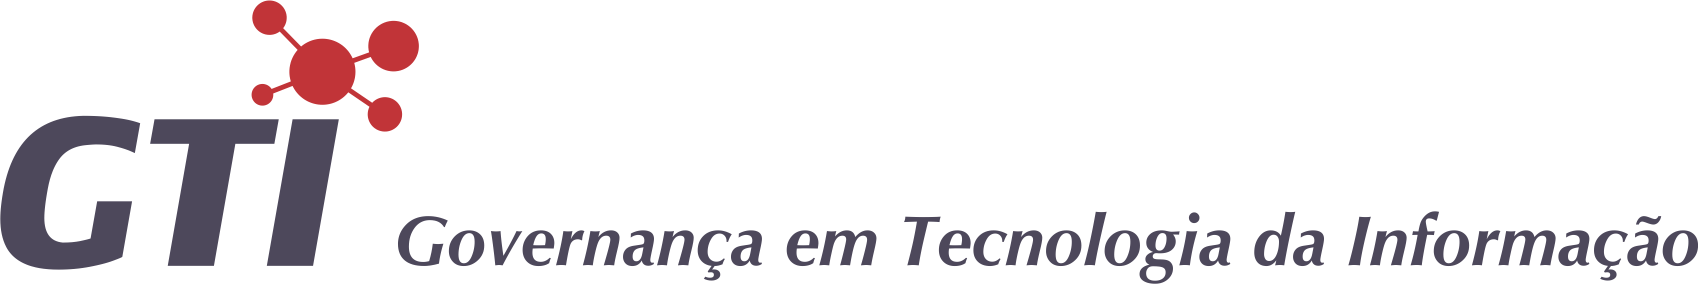 Banner topo - Governança em Tecnologia da Informação